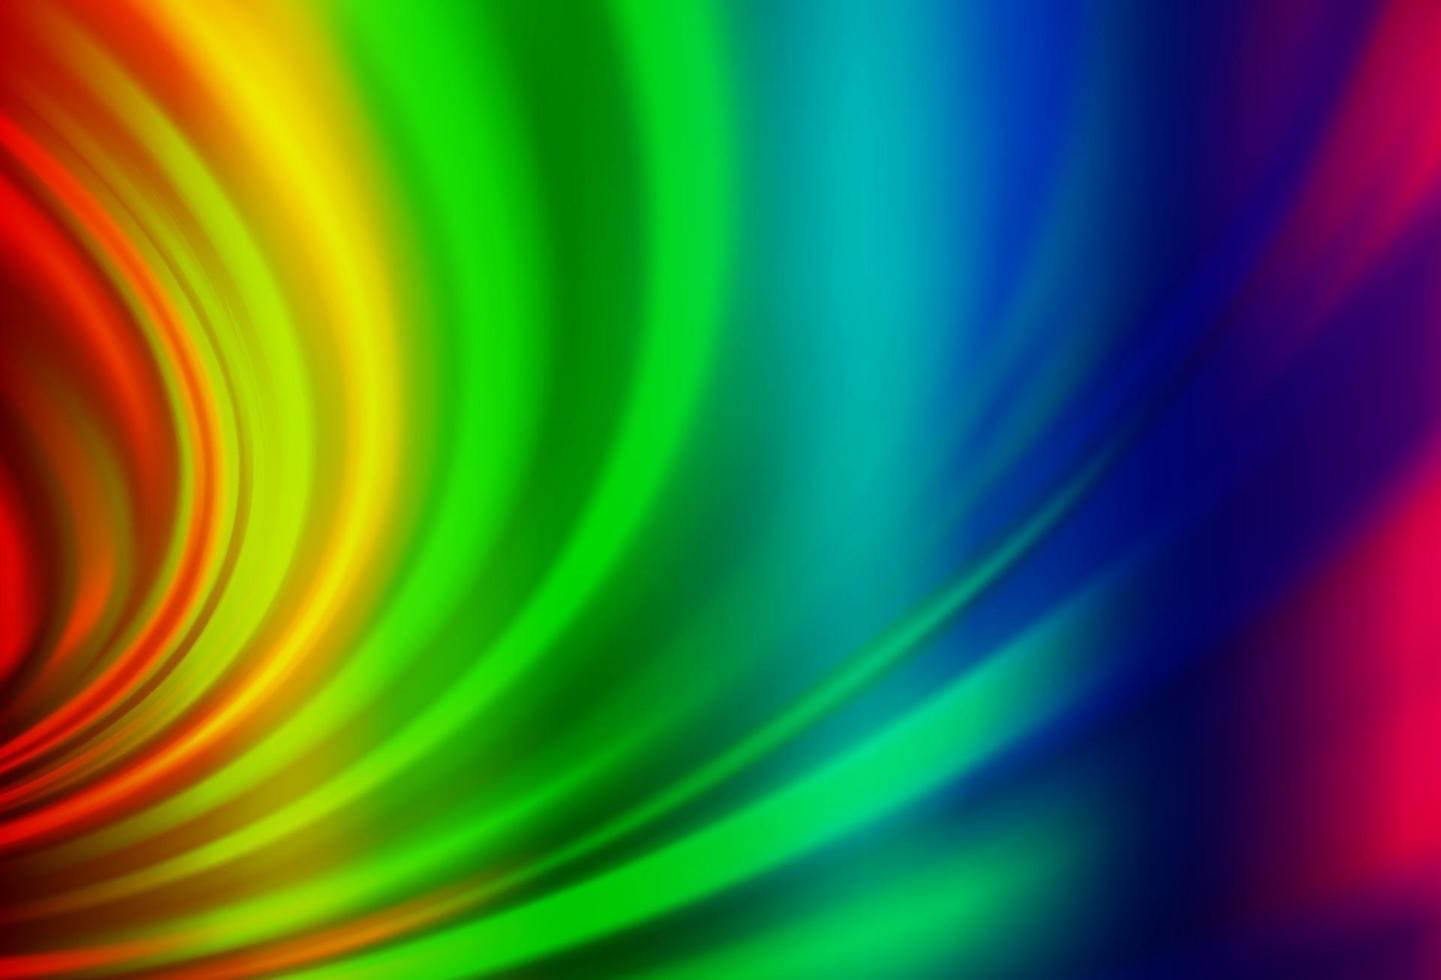 luz multicolorida, modelo de vetor de arco-íris com linhas ovais.